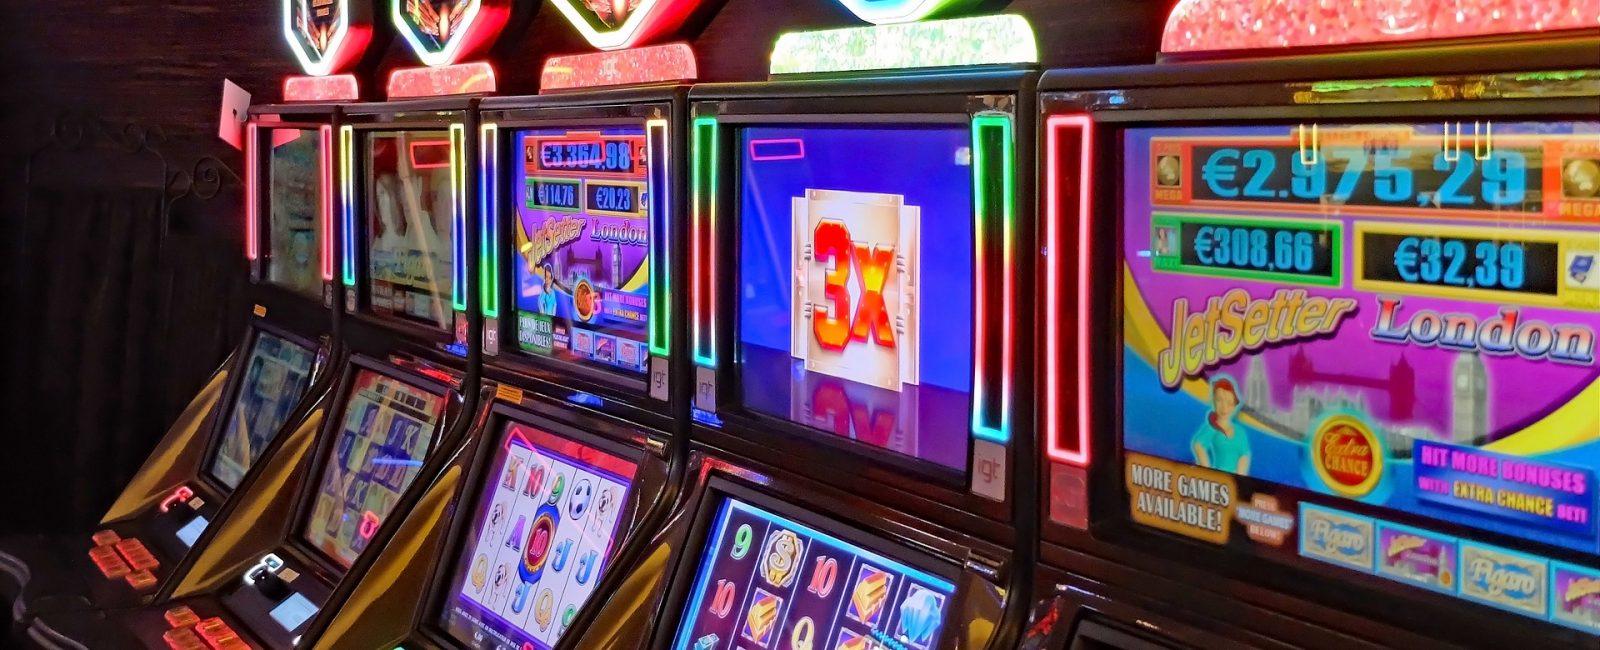 fruit farm slot machines online no sign up